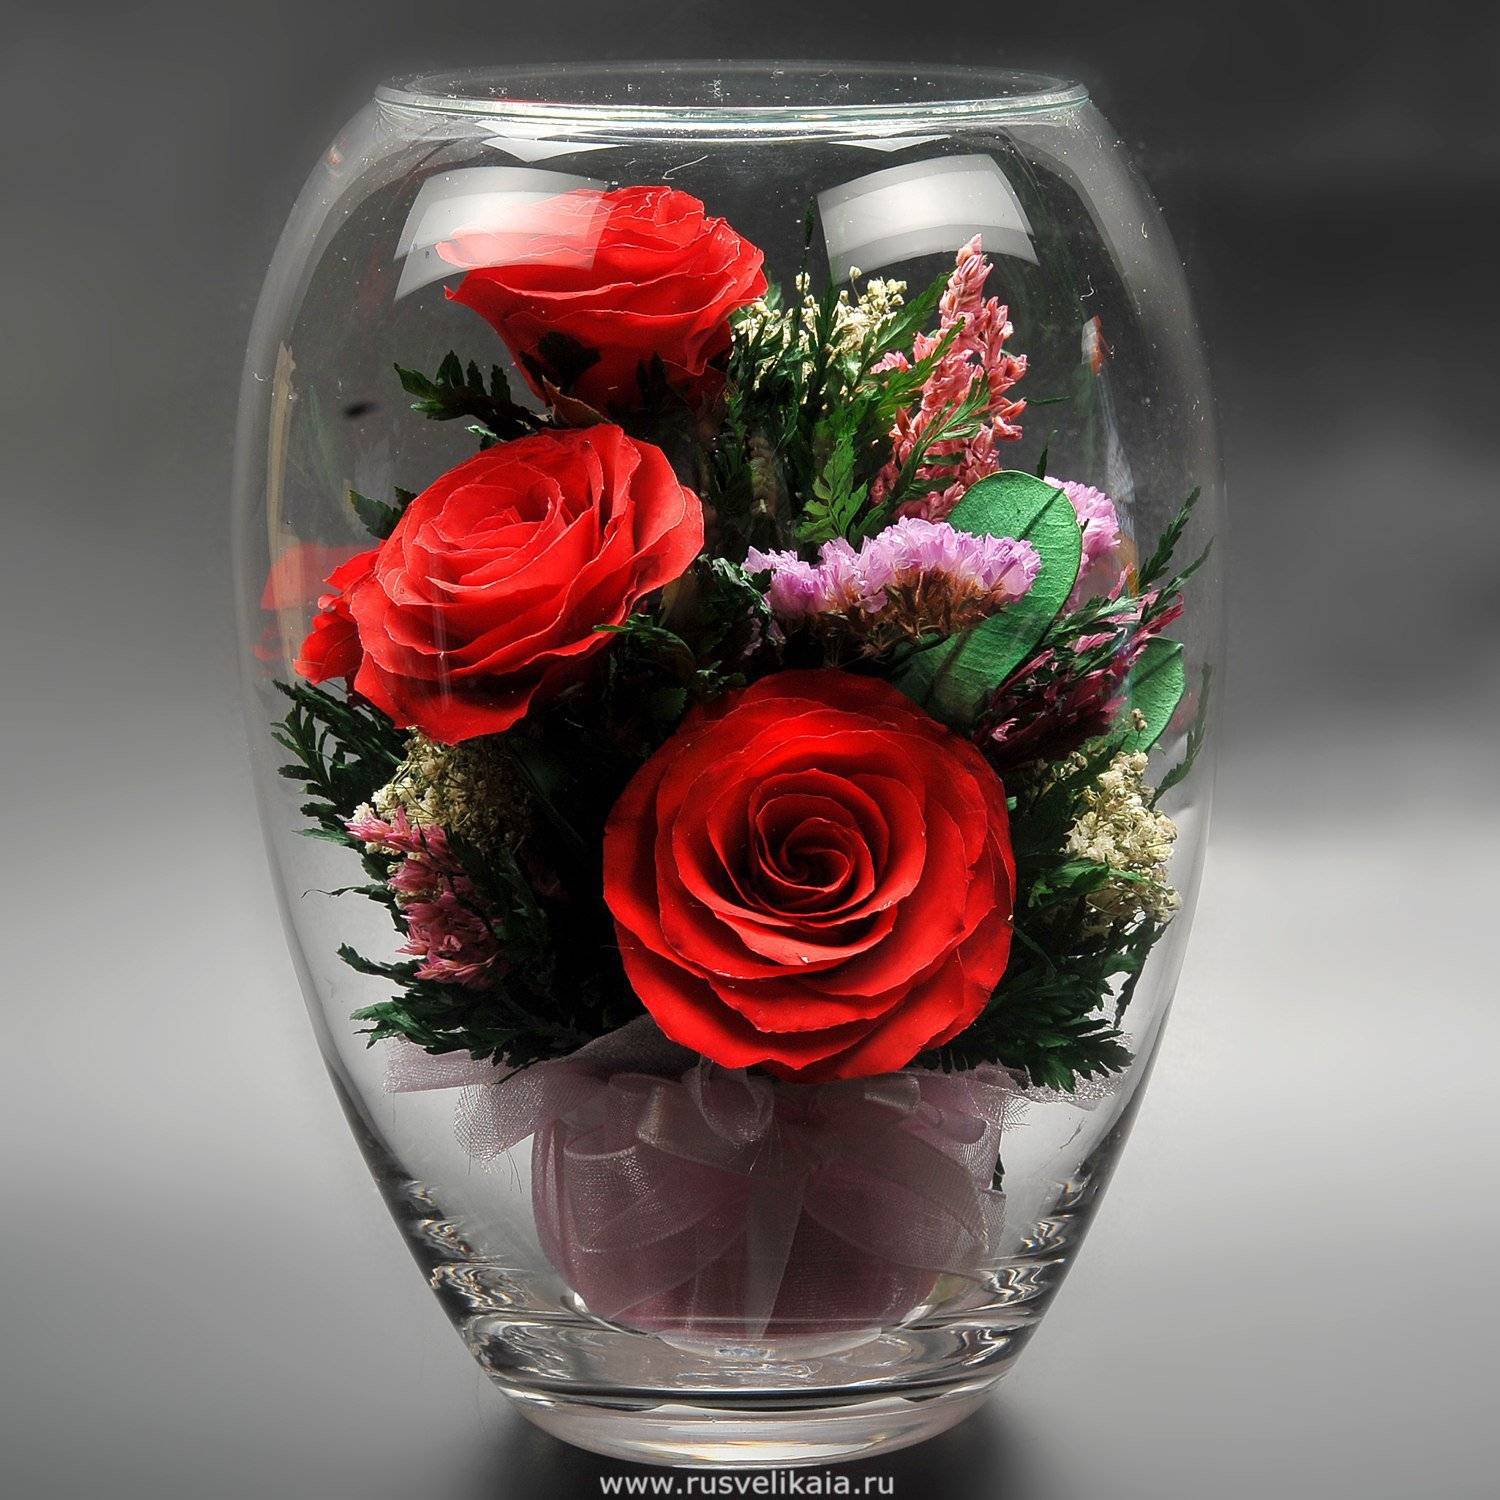 Бизнес идея - живые цветы в стекле